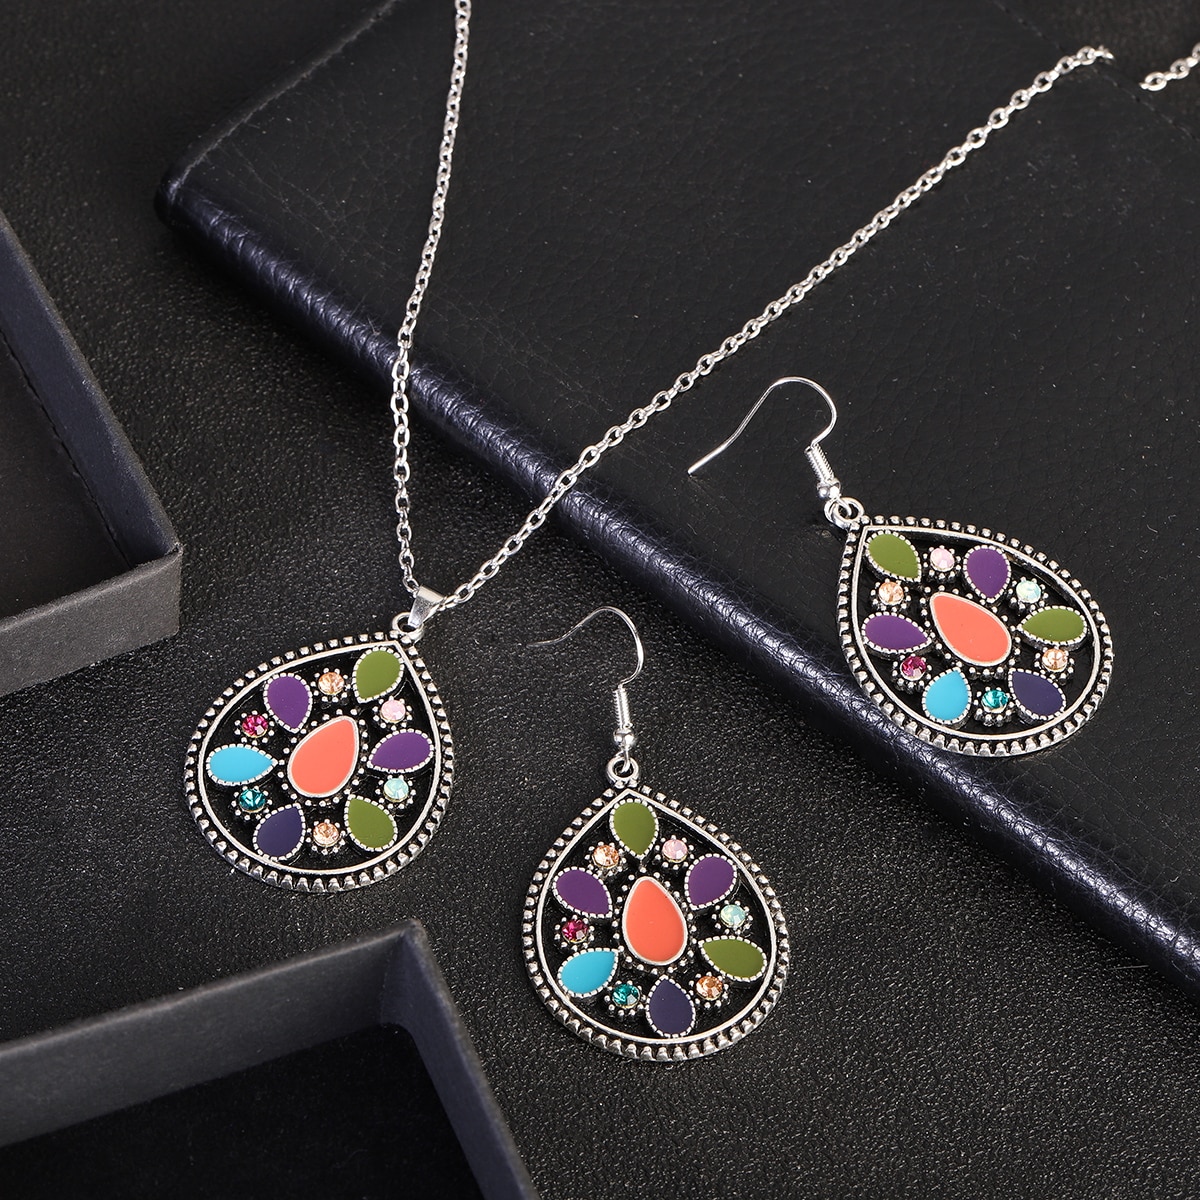 New-Ethnic-Boho-Flower-Earrings-Jewelry-Set-Bijoux-Women39s-Corful-Dripping-Oil-Earrings-Necklace-Se-1005004549738816-7